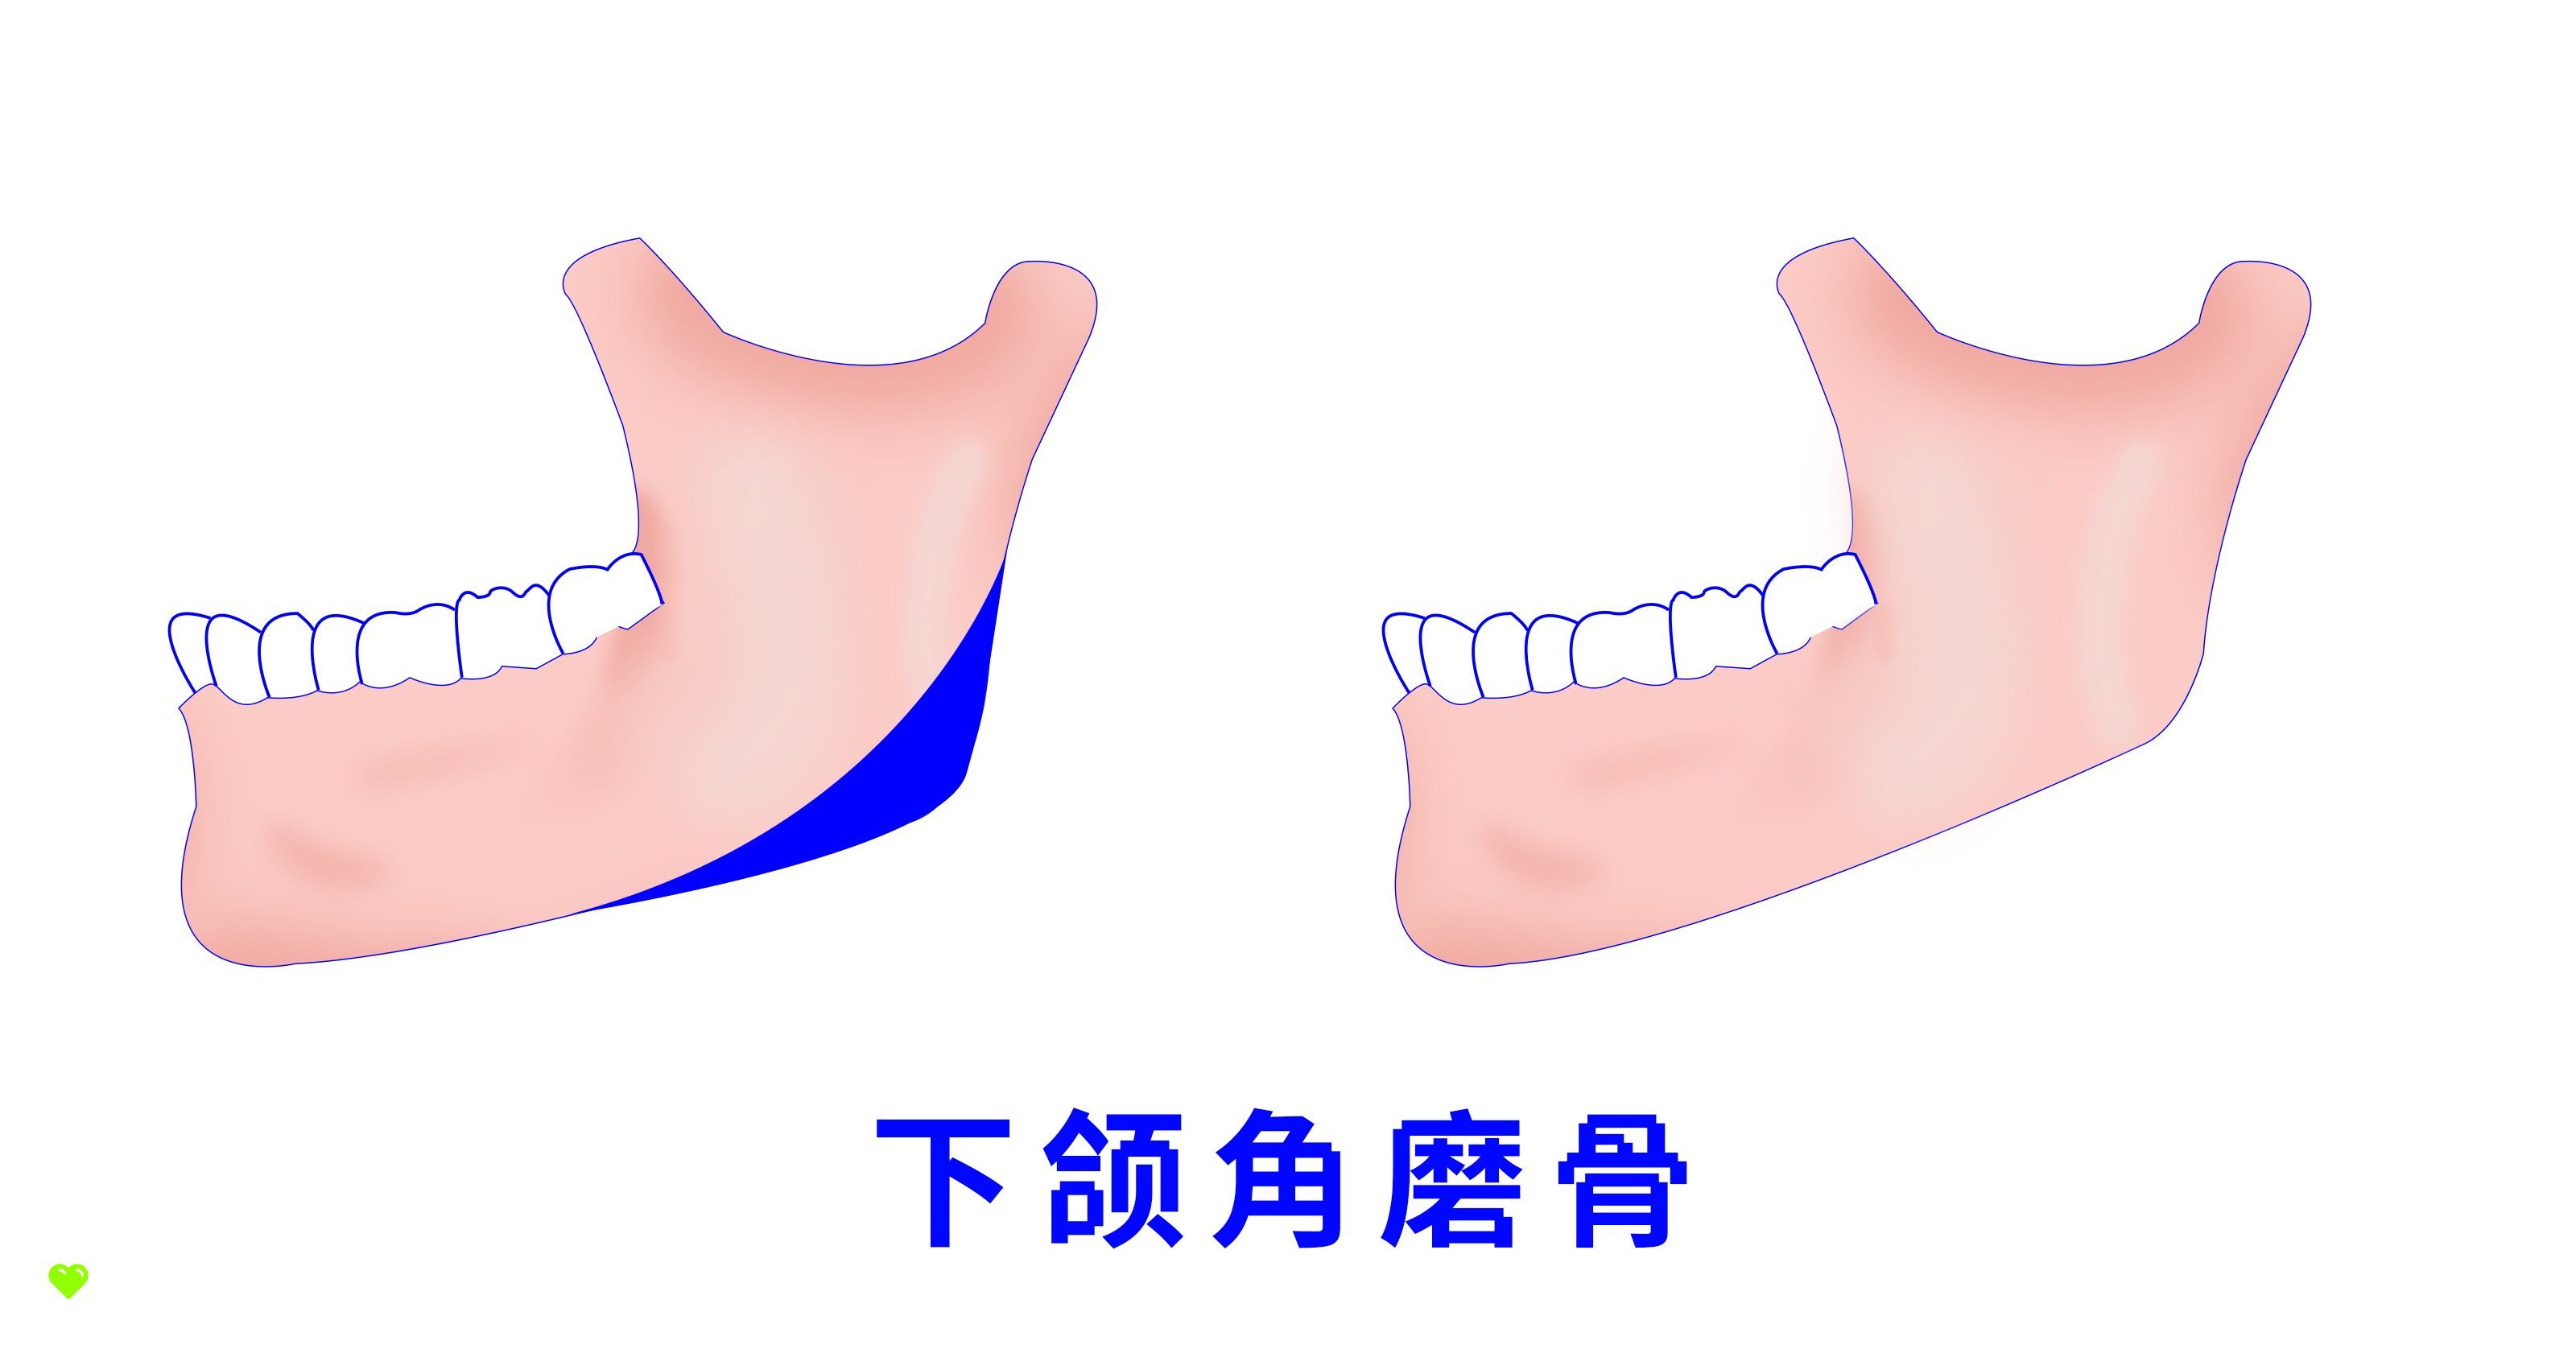 【原创插画】颌面，颌骨，下颌角，下颌角磨骨，第二下颌角，下颌缘